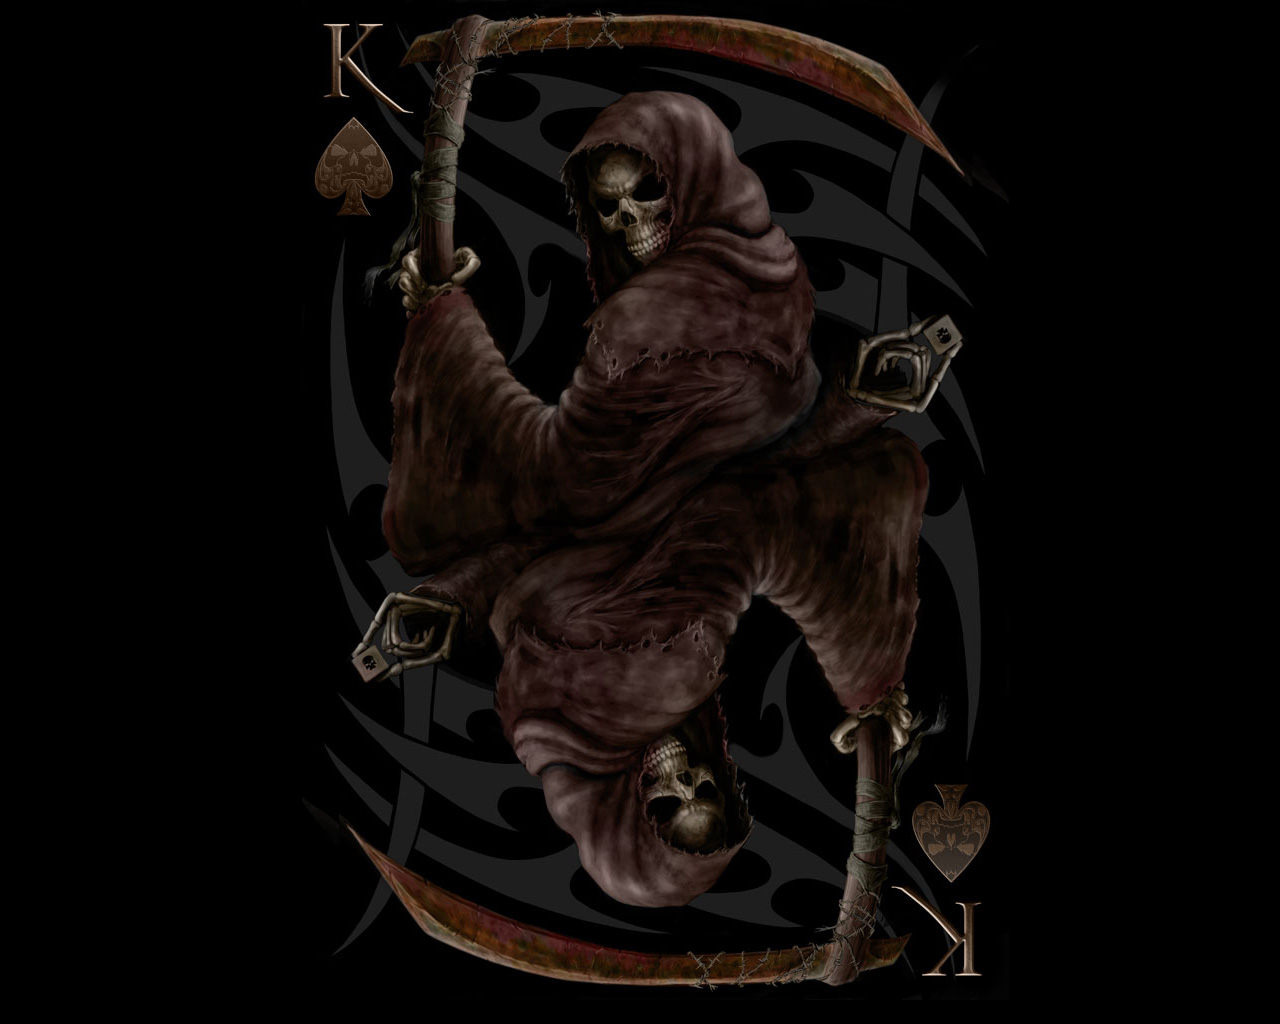 death skull wallpaper,illustration,fictional character,cg artwork,darkness